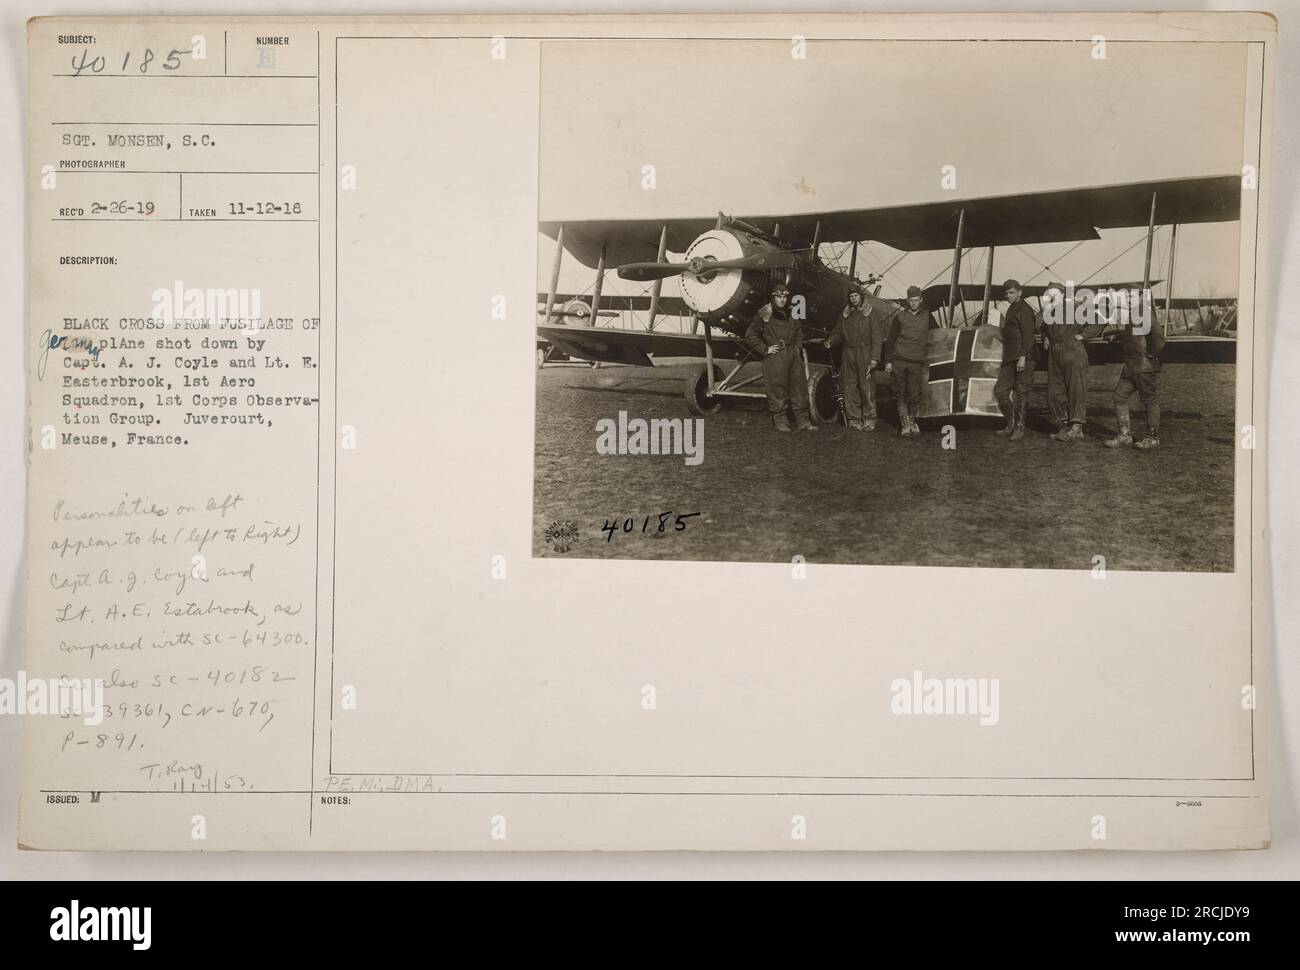 Kapitän A.J. Coyle und Leutnant E. Easterbrook von der 1. Aero-Staffel, 1. Corps Observation Group posieren mit dem Wrack eines deutschen Flugzeugs, das sie abgeschossen haben. Das Foto wurde von Sergeant Monsen am 12. November 1918 in Juve rourt, Mause, Frankreich, aufgenommen. Auf dem Bild sind auch persönliche Gegenstände der Flugzeuge zu sehen. Stockfoto